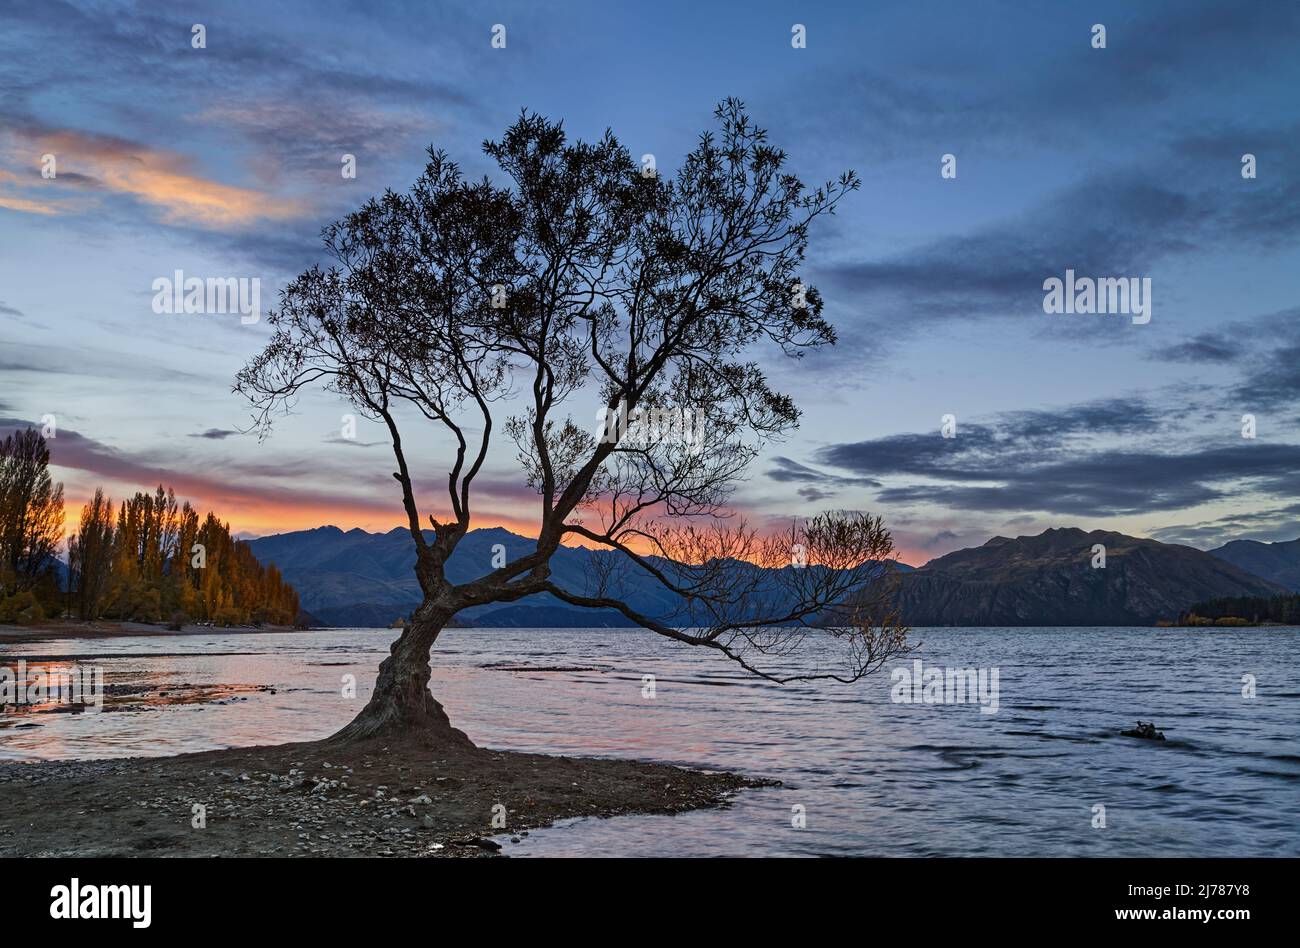 Le célèbre arbre solitaire du lac Wanaka au coucher du soleil, île du Sud, Nouvelle-Zélande Banque D'Images